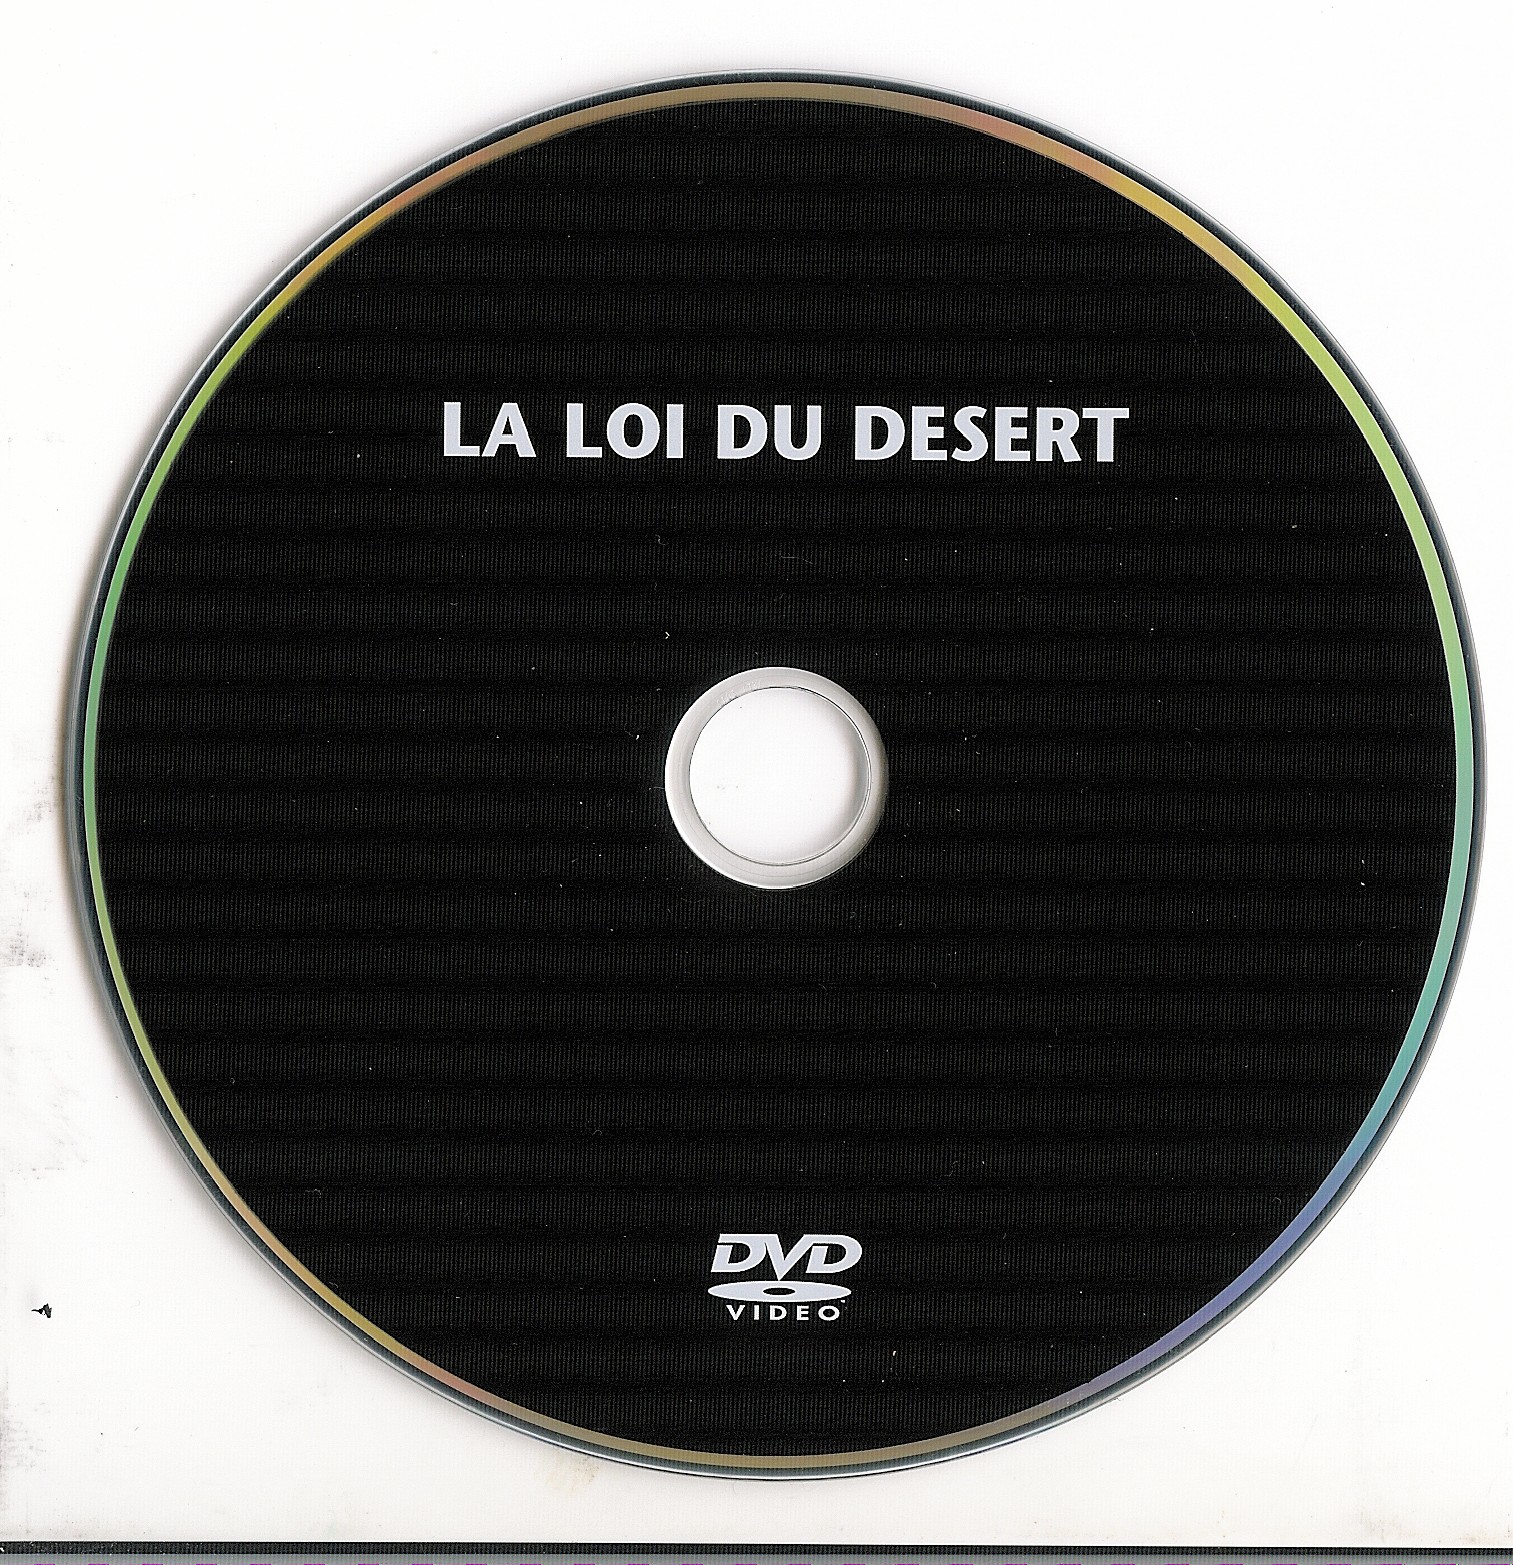 La loi du desert